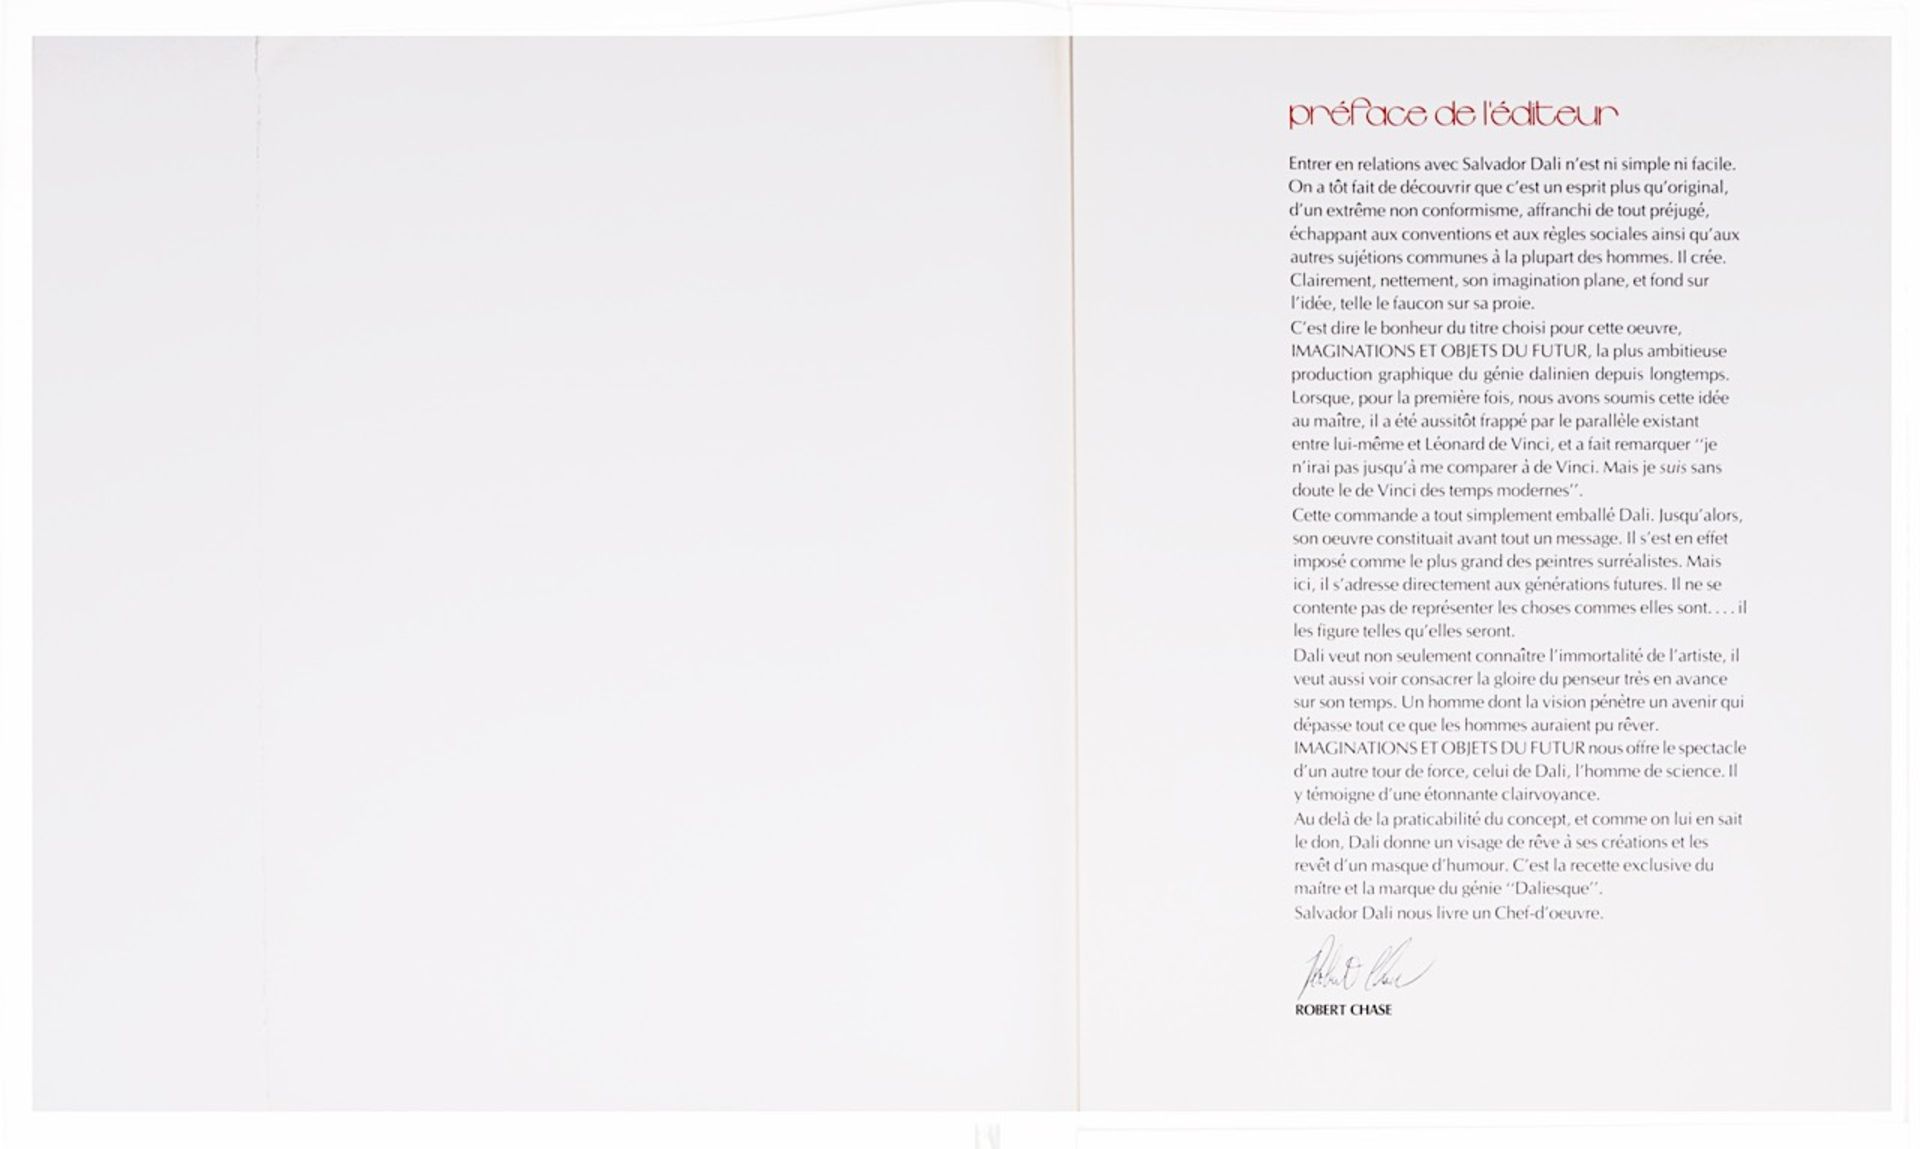 Salvador Dali (1904-1989), 'Imaginations et Objets du Futur', 1975, portfolio with ten framed lithog - Image 35 of 37